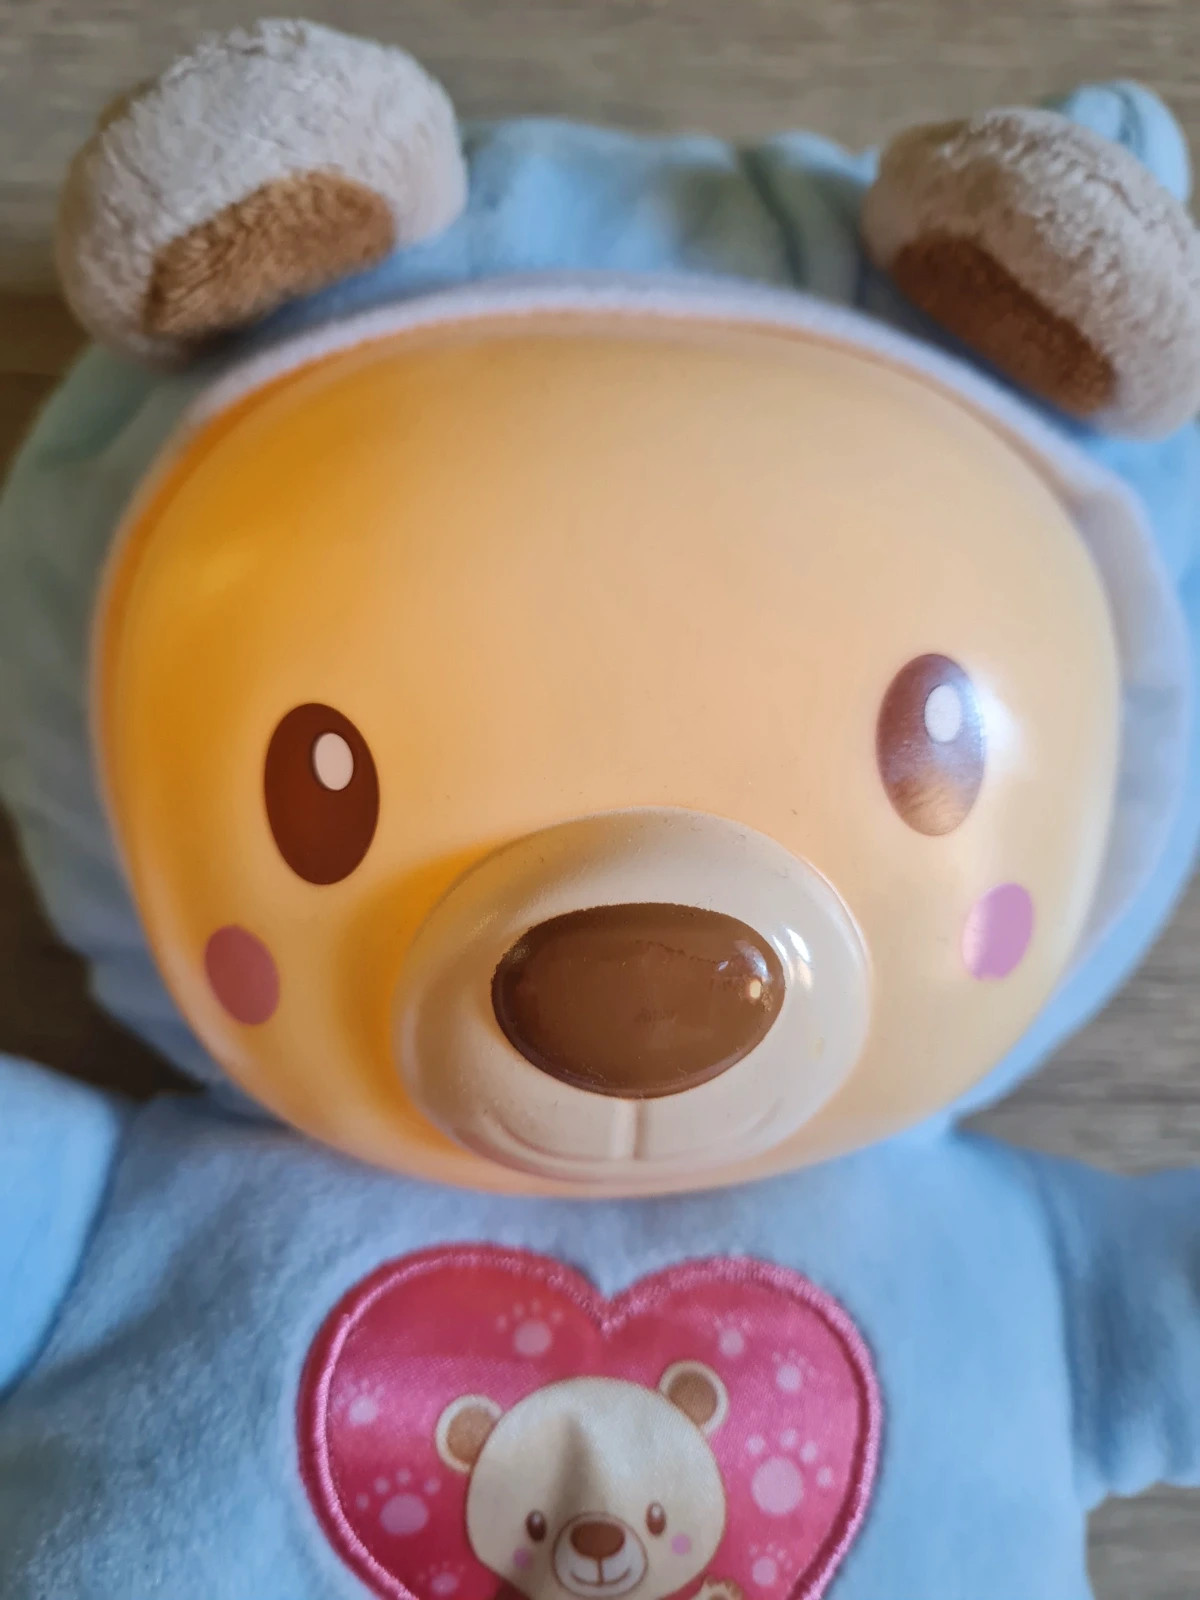 Peluche veilleuse - Léon, mon lumi ourson - VTech jouets